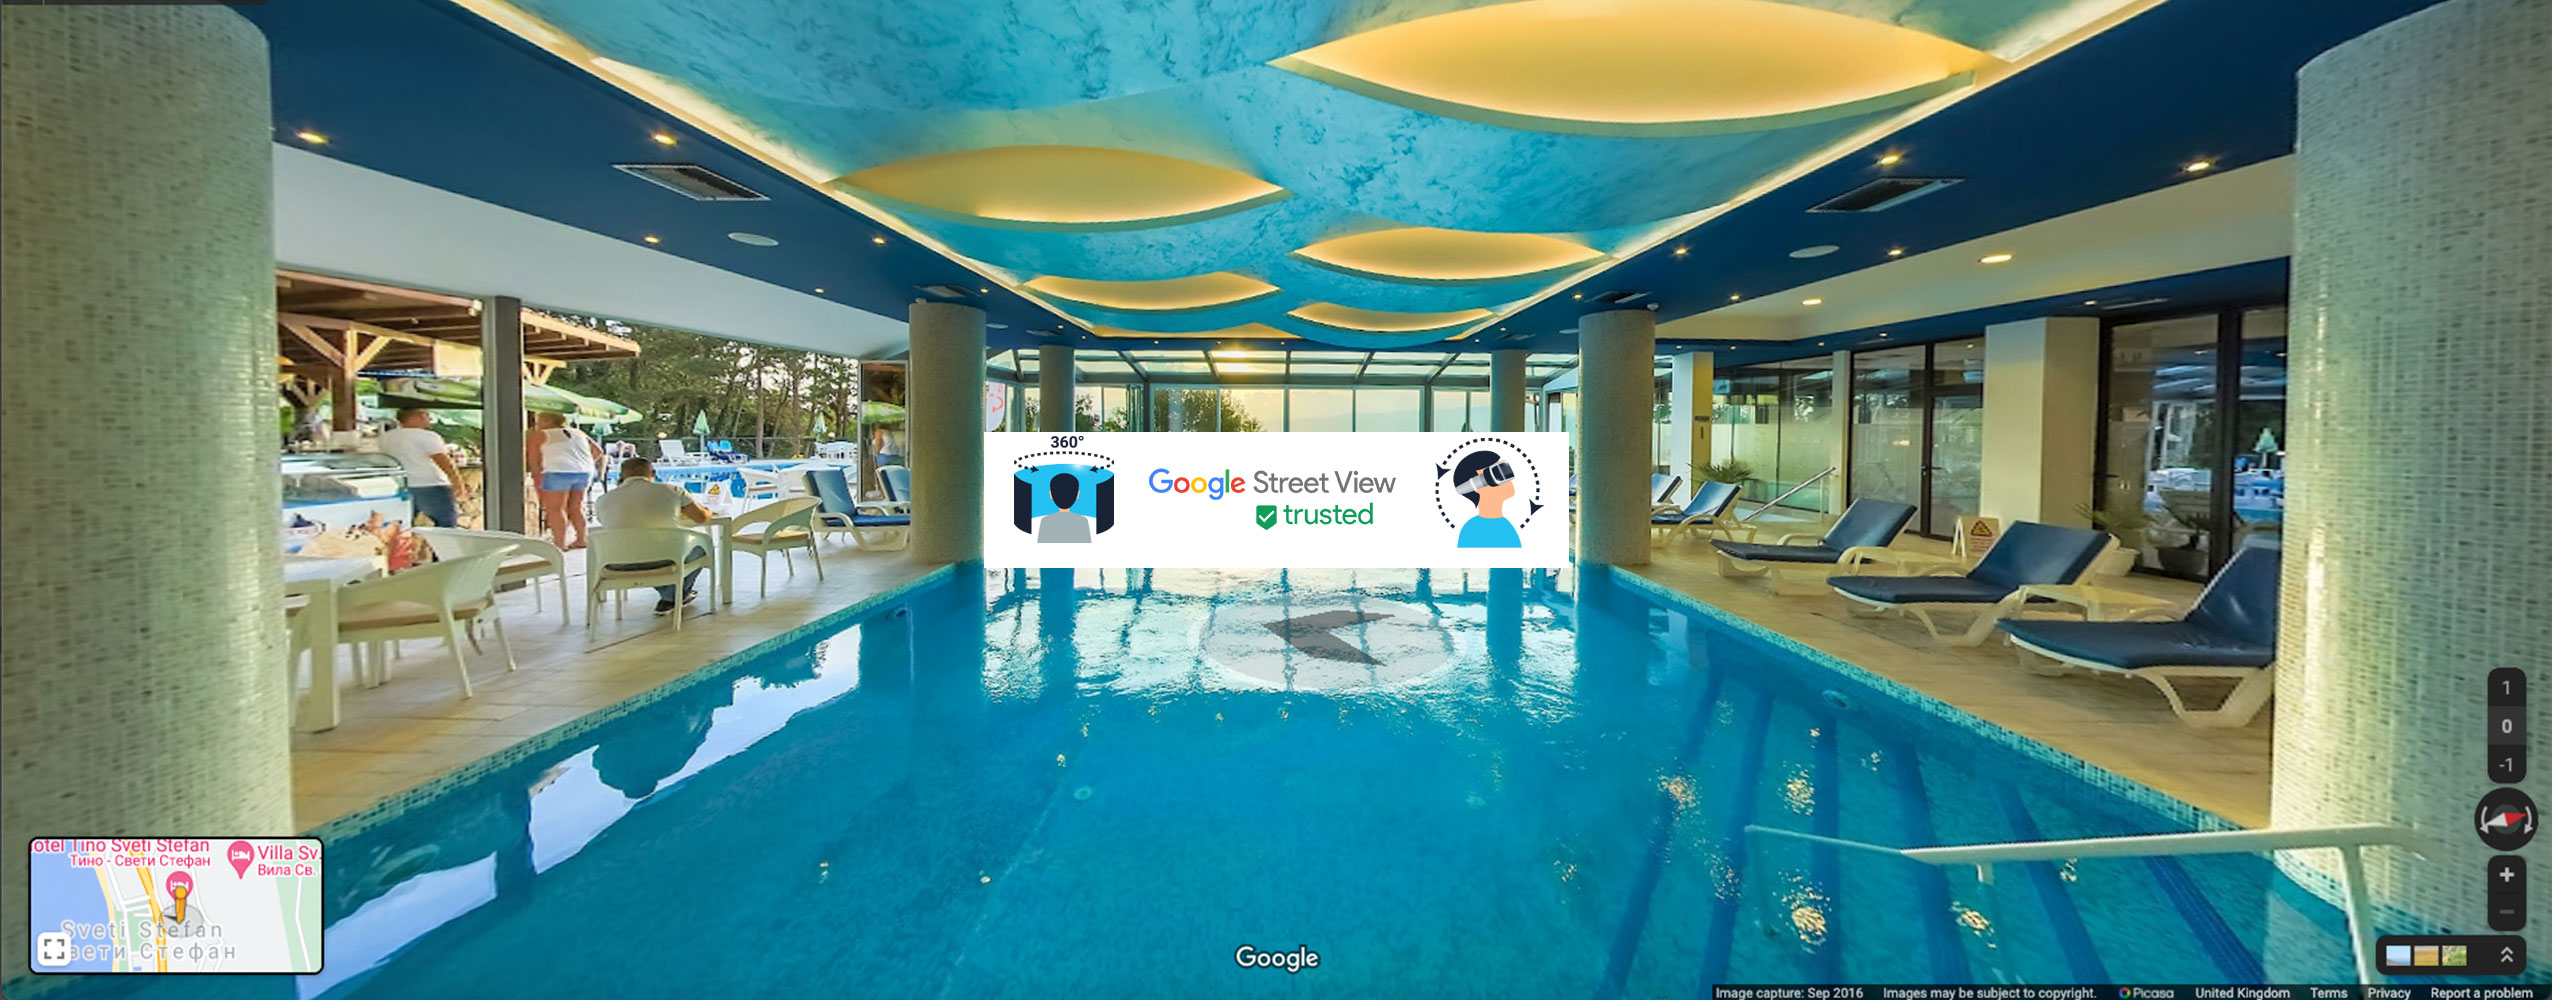 Хотел Тино Св. Стефан – Охрид – 360 Google Street View – 2016